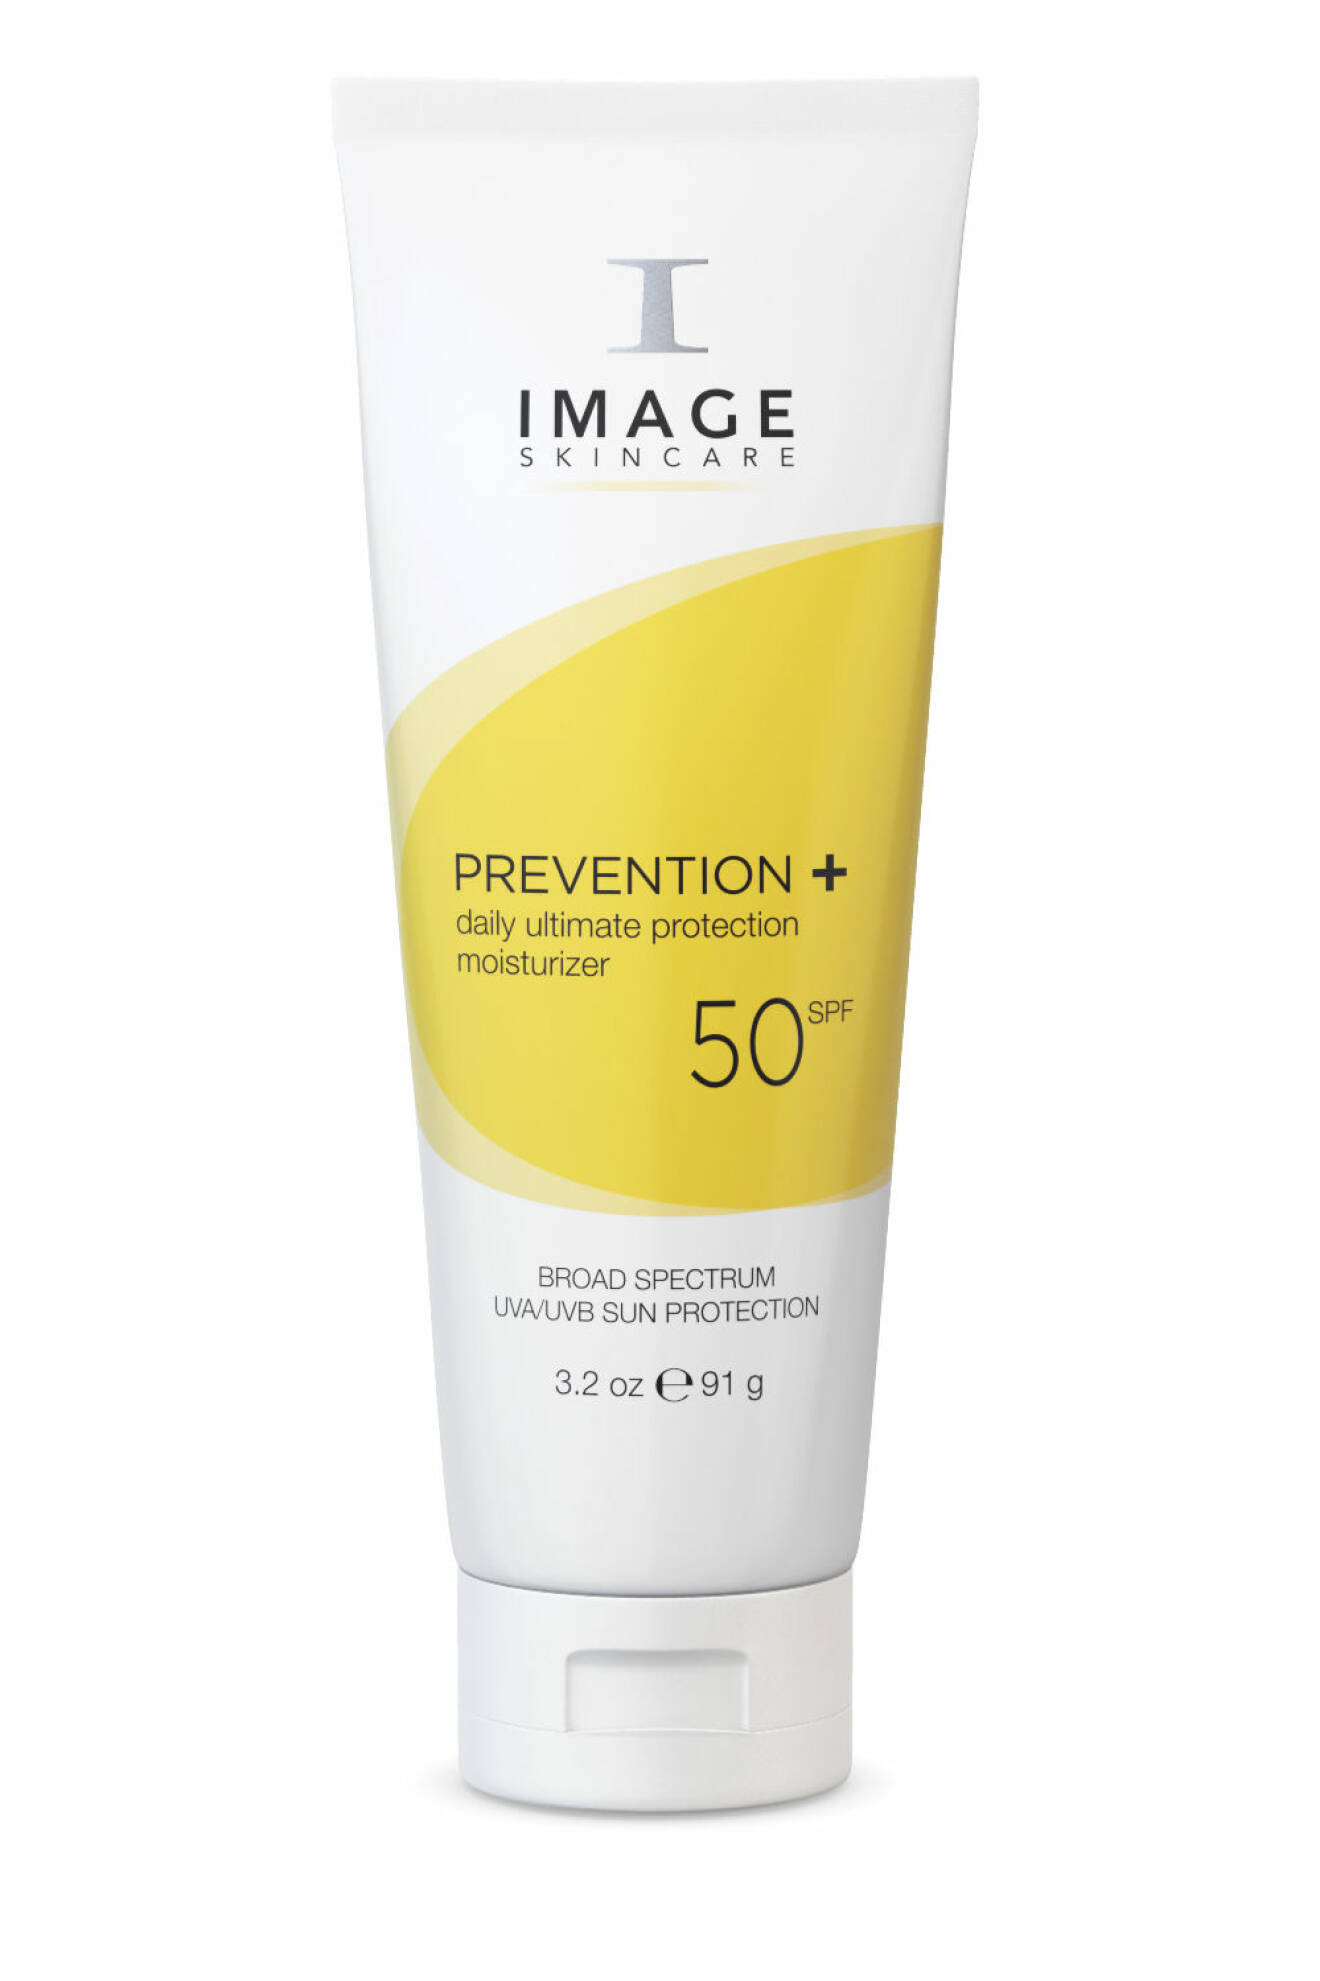 Skincare prevention spf 50, Image skincare.